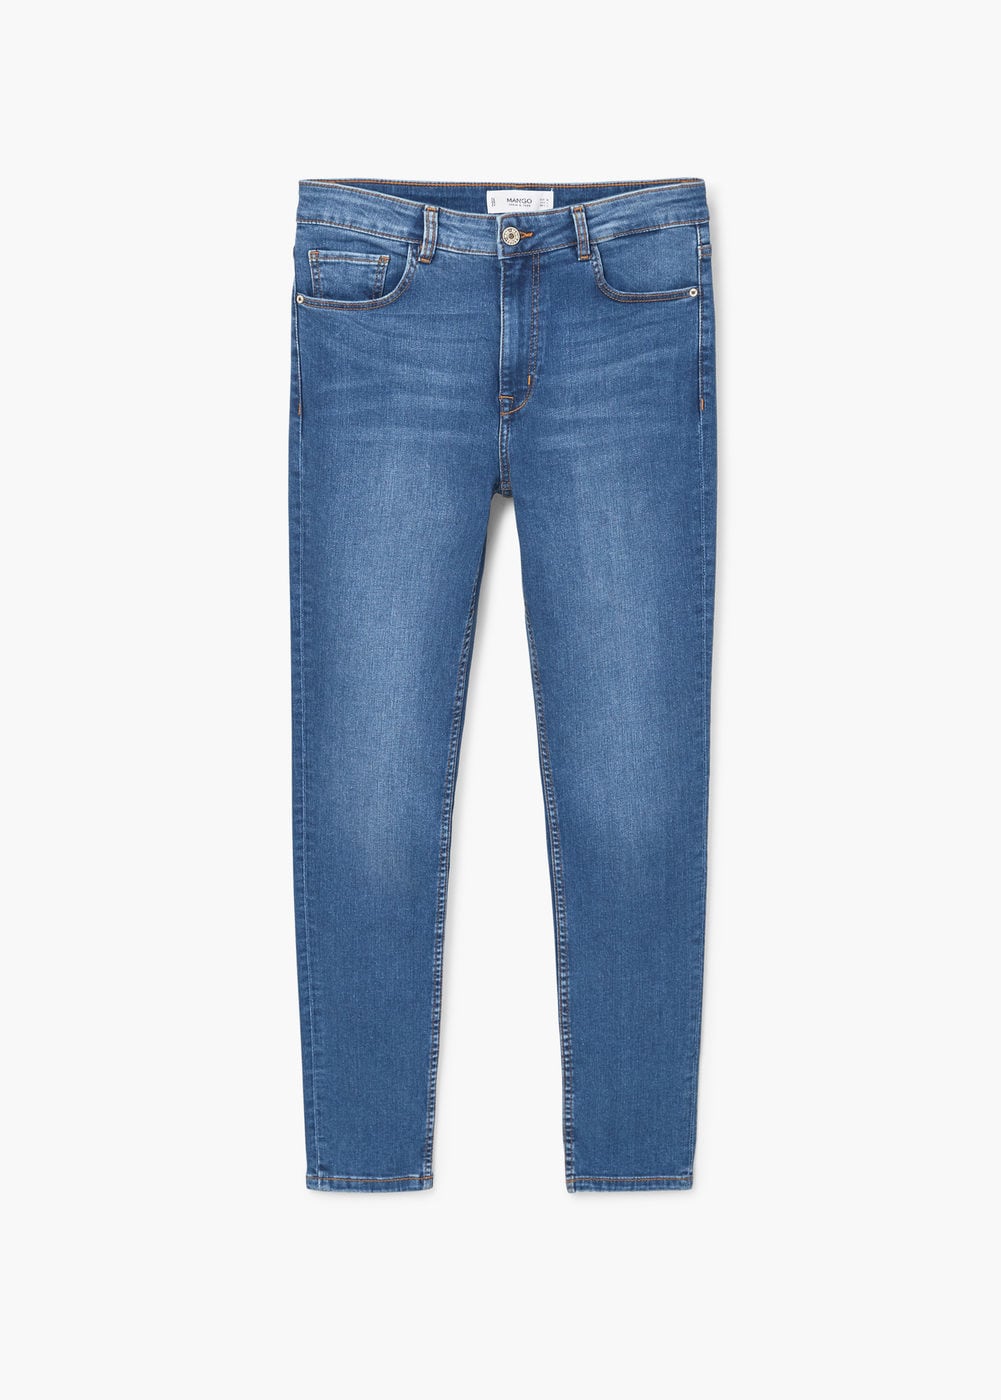 Jeans da Mango (29,99 euros)